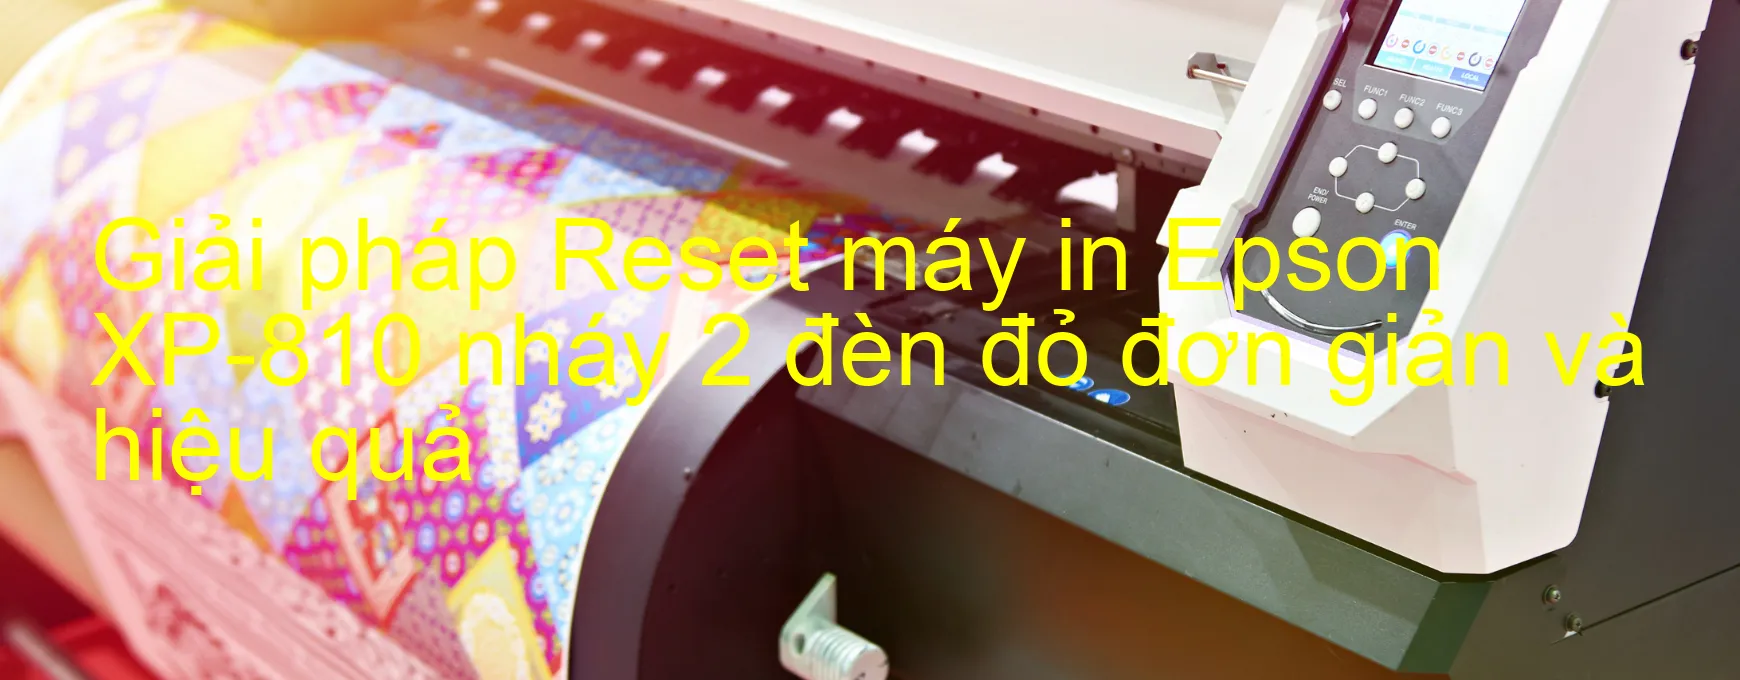 Reset máy in Epson XP-810 nháy 2 đèn đỏ: Cách khắc phục lỗi một cách đơn giản và hiệu quả